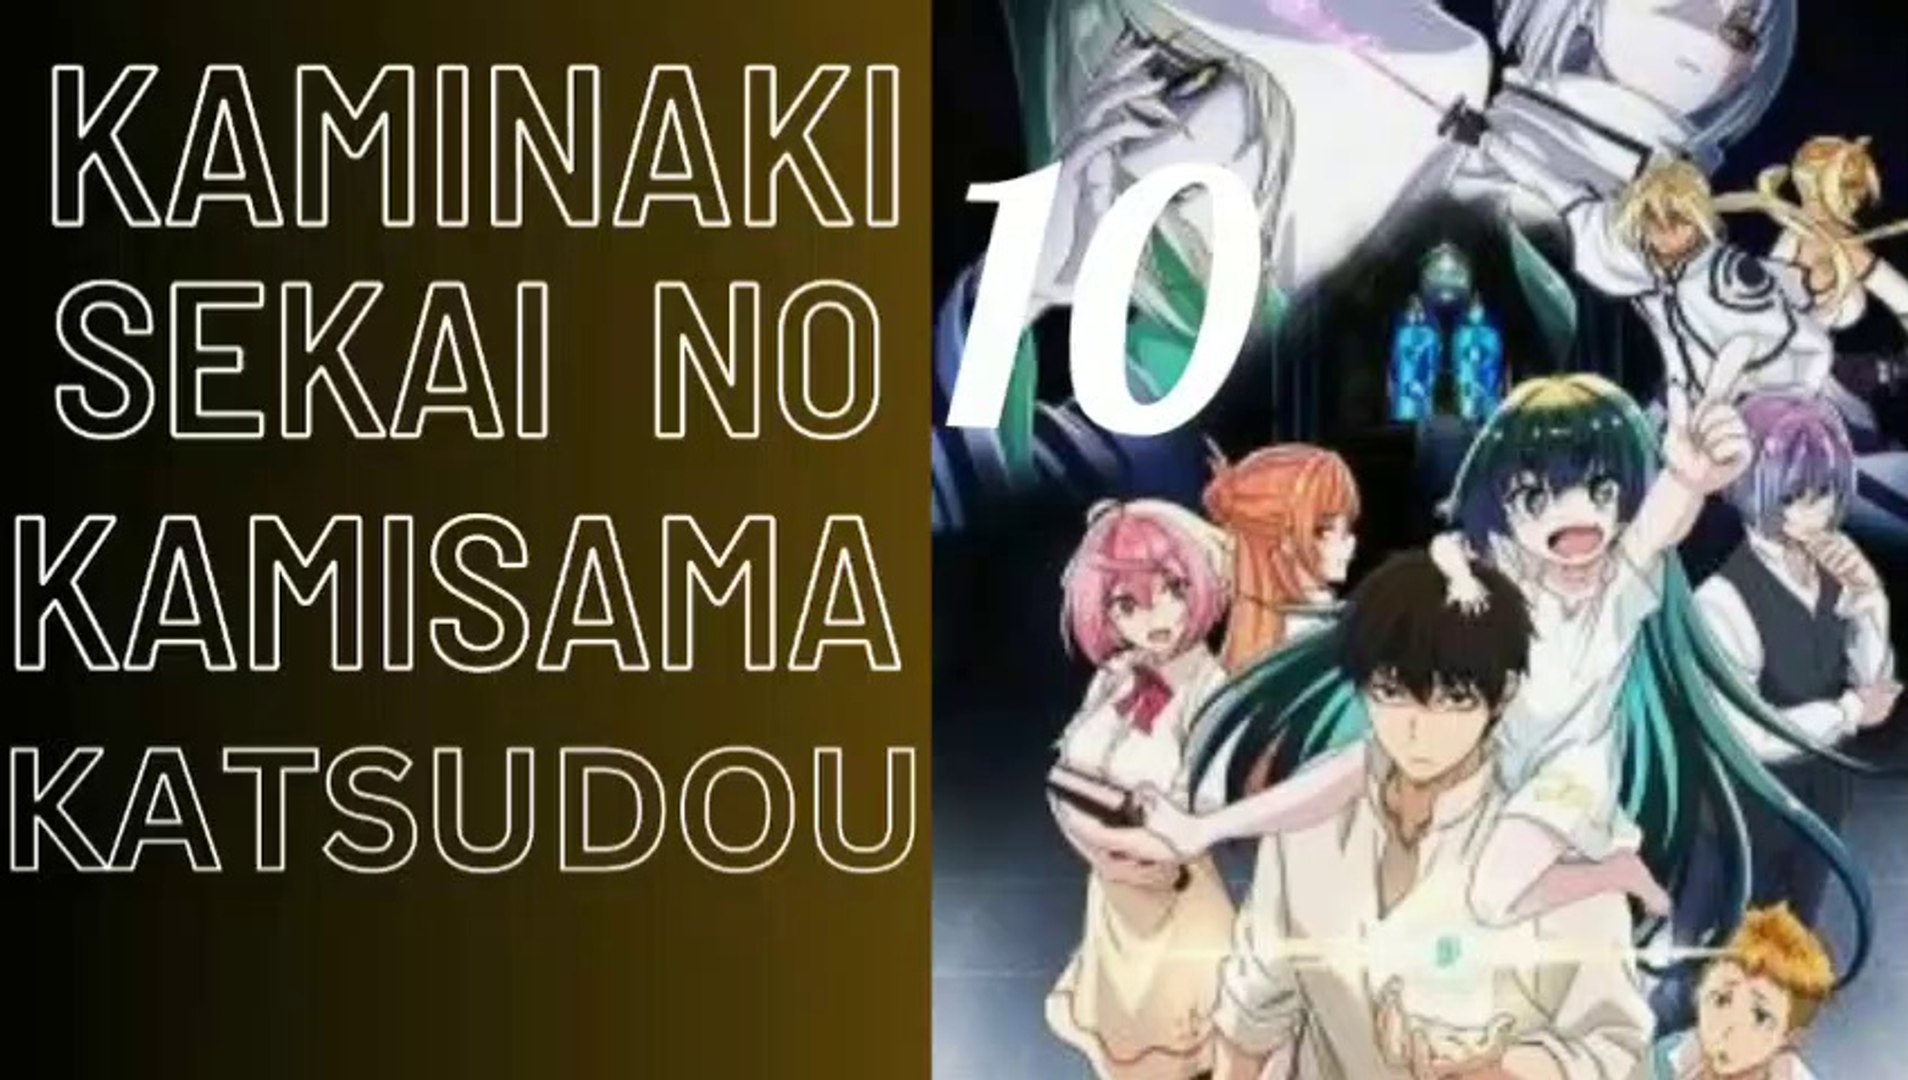 Kamisama ni - 01 - 10 - Lost in Anime